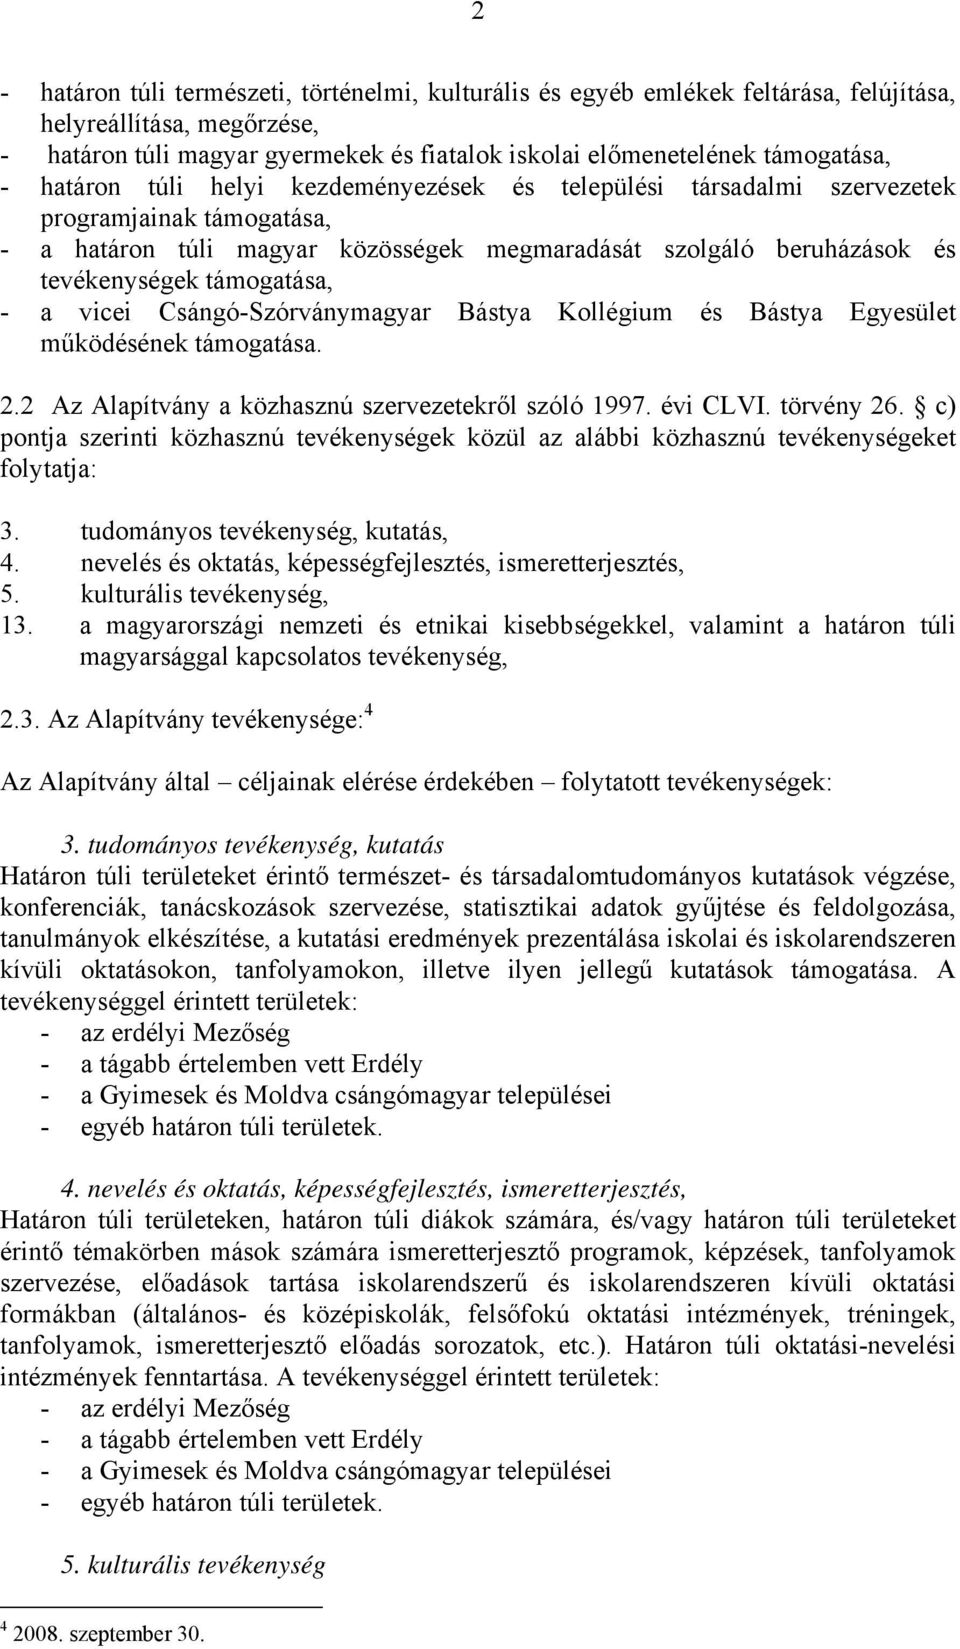 vicei Csángó-Szórványmagyar Bástya Kollégium és Bástya Egyesület működésének támogatása. 2.2 Az Alapítvány a közhasznú szervezetekről szóló 1997. évi CLVI. törvény 26.